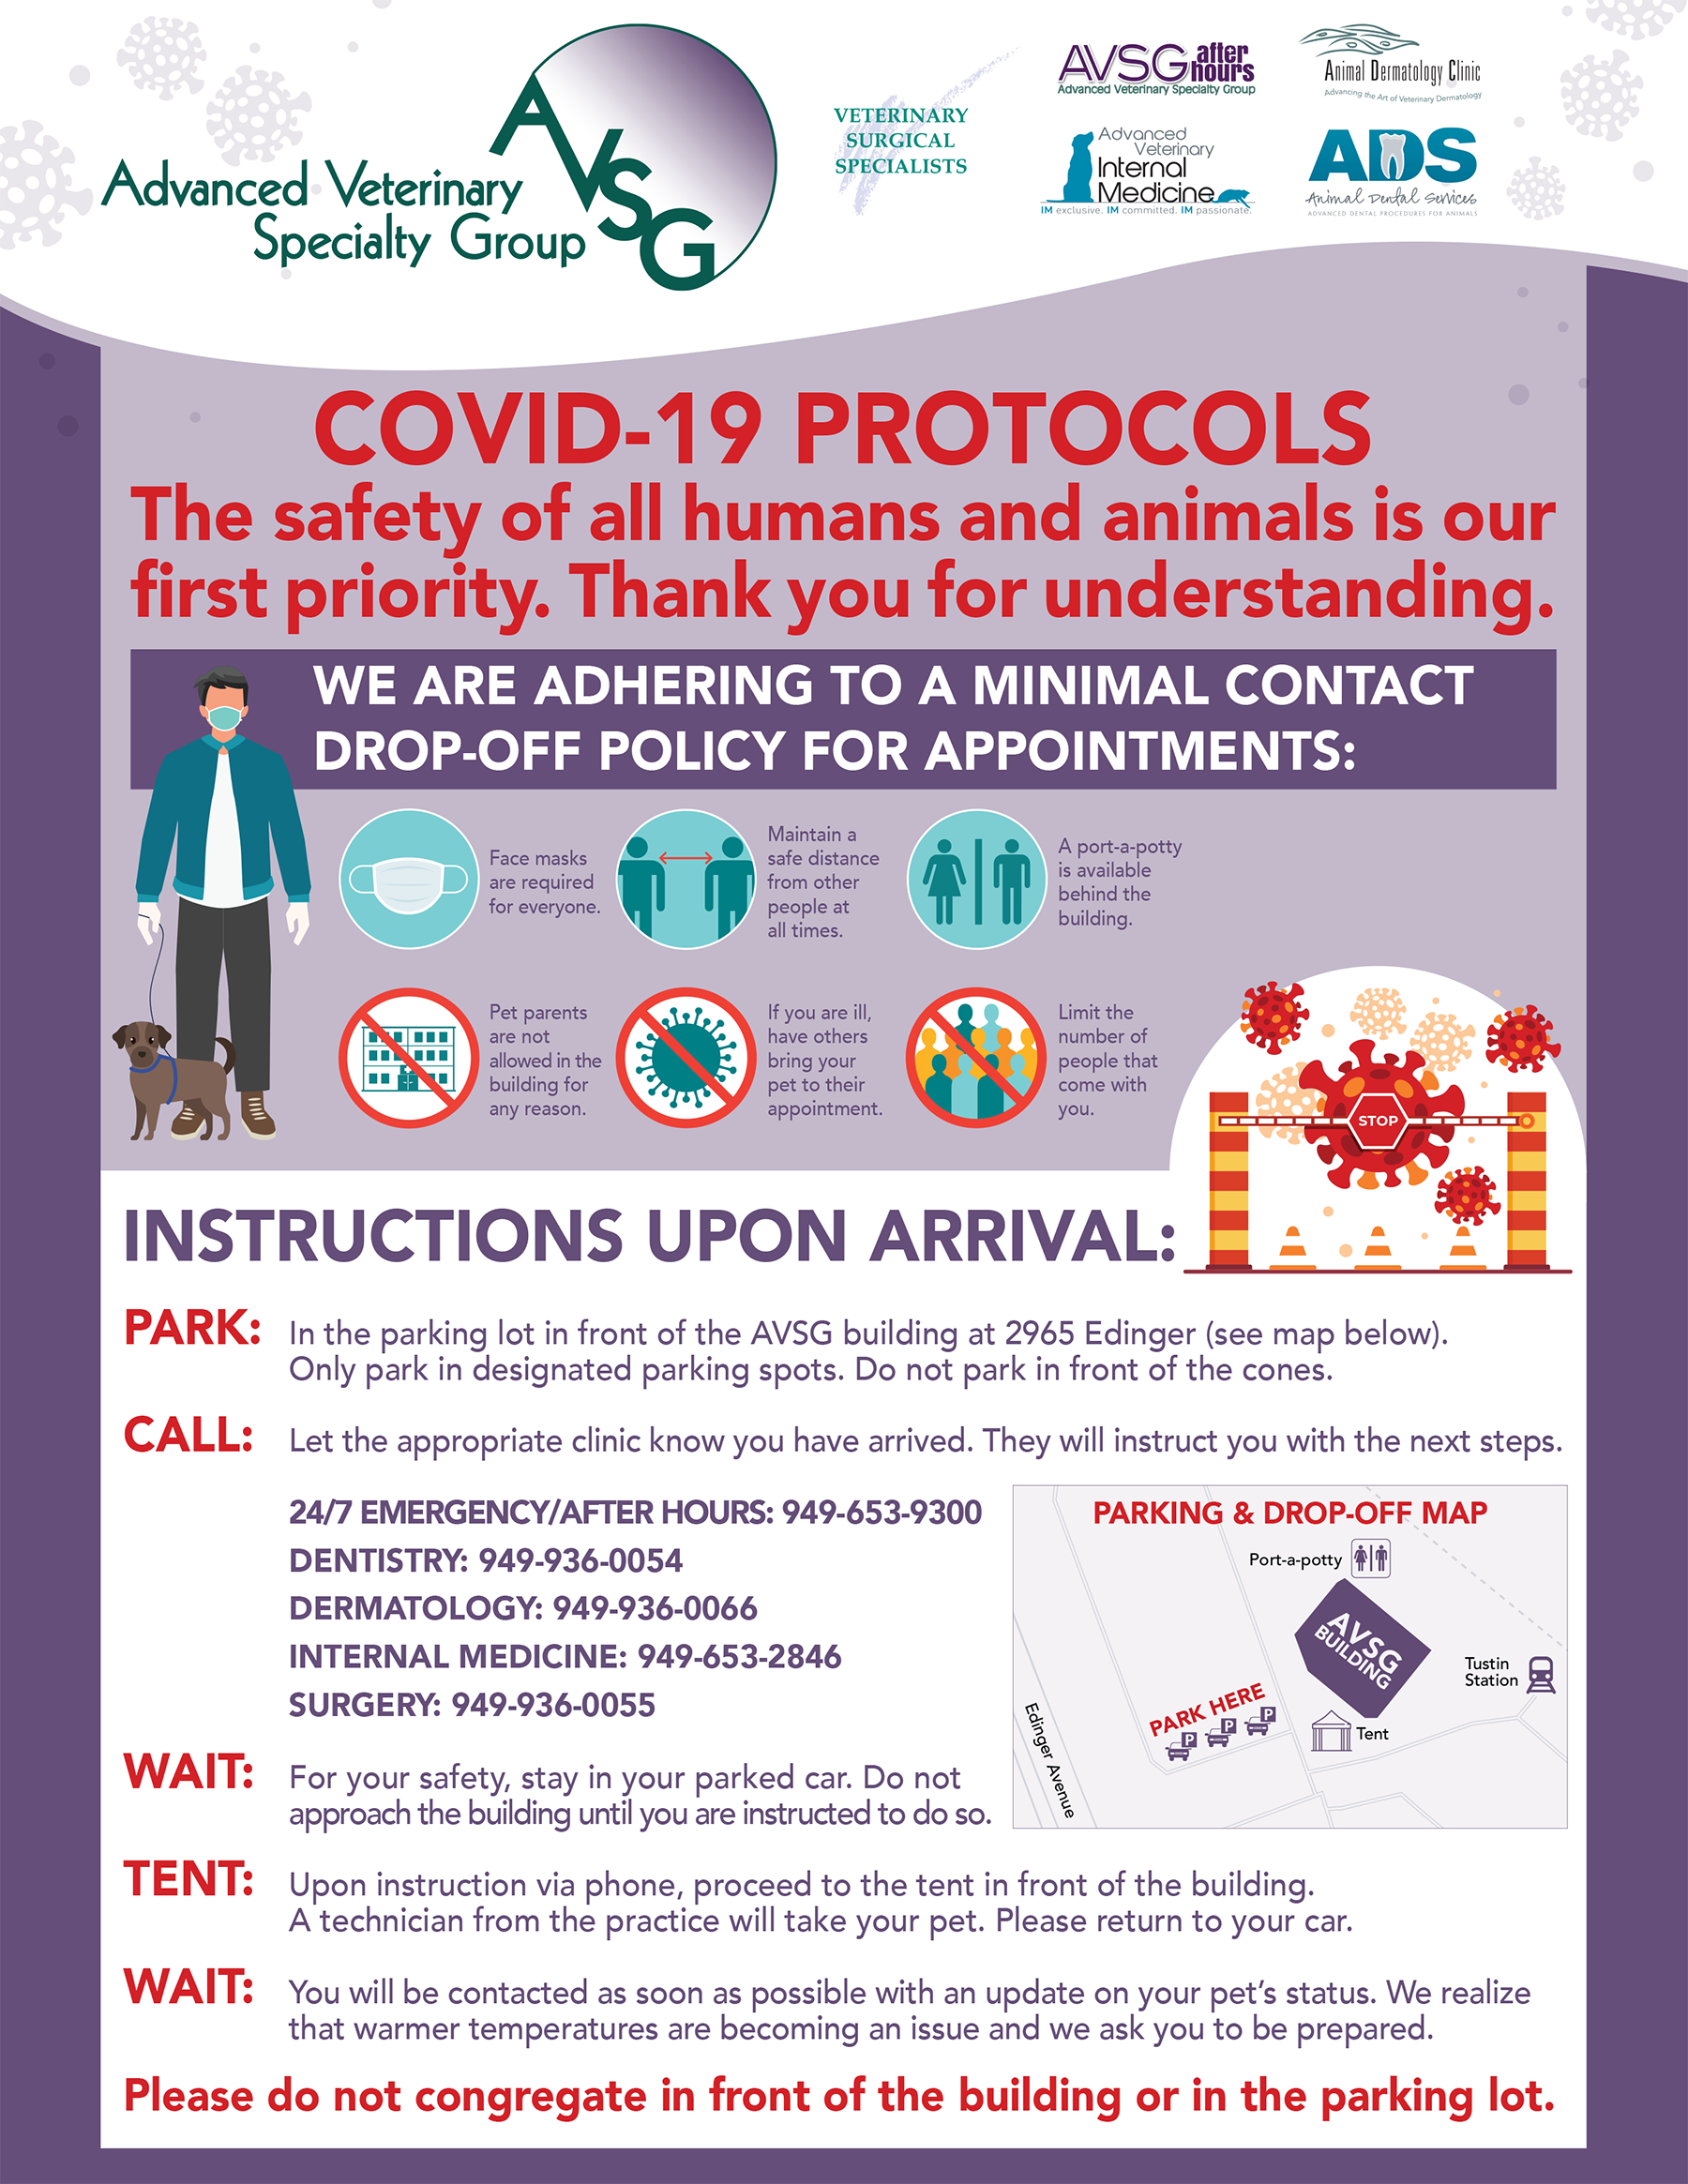 AVSG COVID-19 Appointment protocols